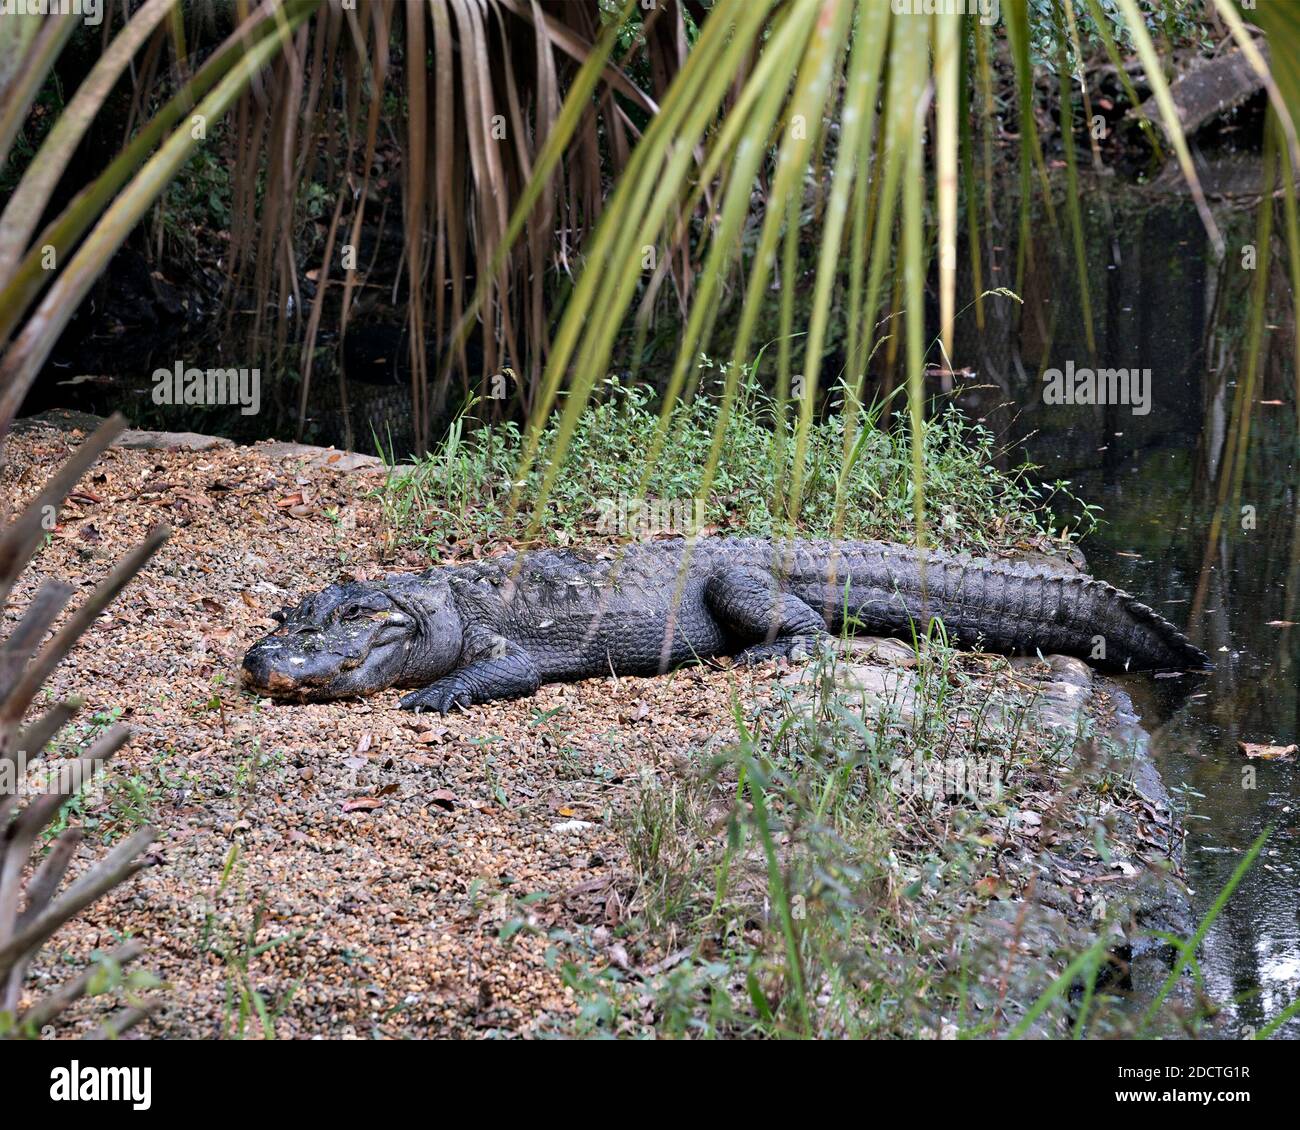 Alligator Nahaufnahme Profil Ansicht Ruhe am Wasser zeigt Körper, Kopf, Schwanz, Füße, und genießen Sie seinen Lebensraum und die Umwelt. Alligatorfoto. Stockfoto